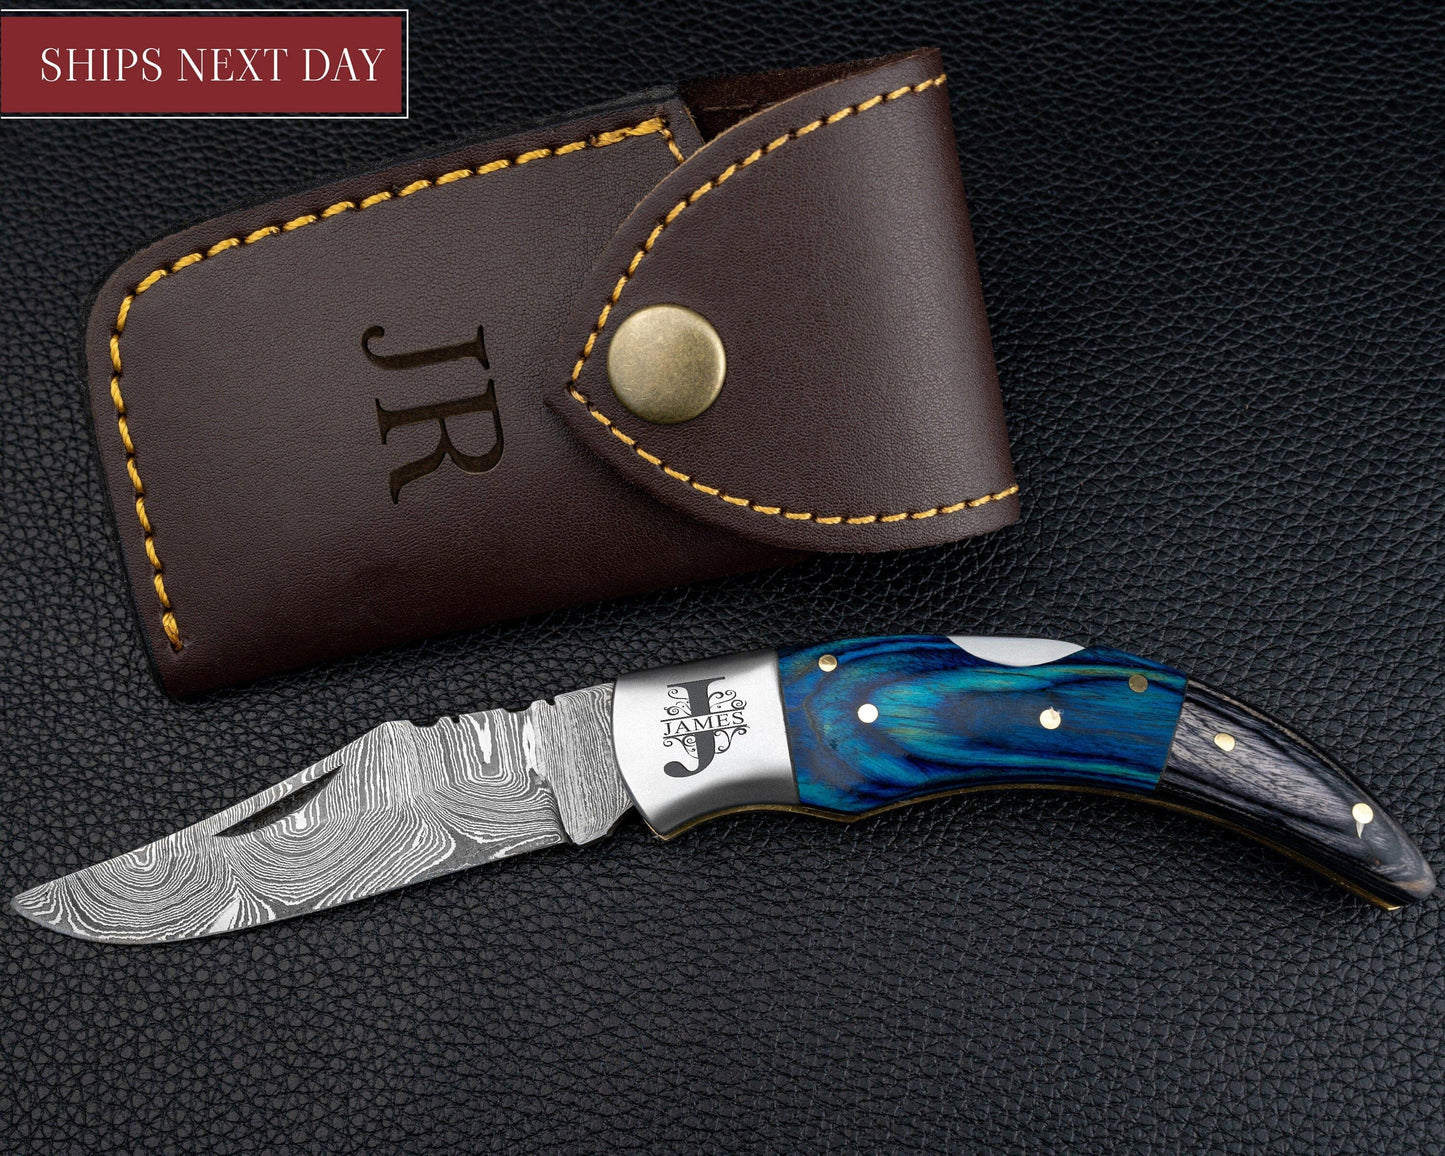 Damascus Pocket Folding Knife, Pocket Knife For Men - 7" Groomsmen gifts, Damascus Steel Personalized Customized Knife Blue Pakka Handle Etsy 